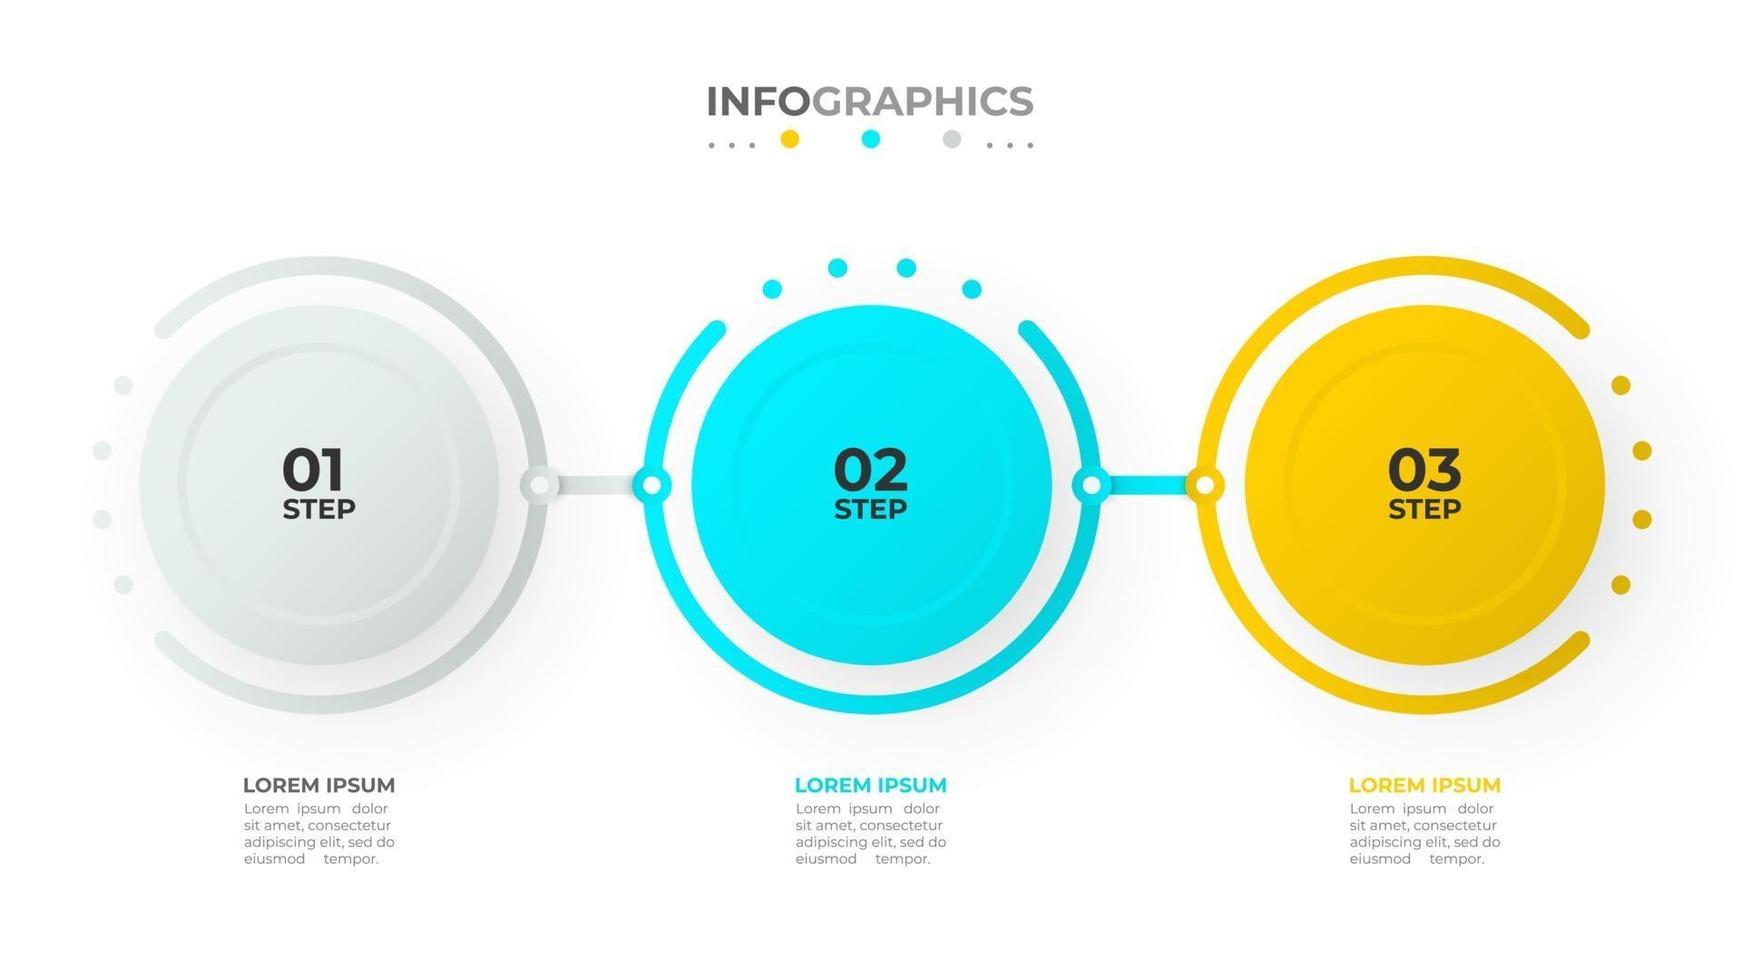 tijdlijn infographic sjabloonontwerp vector met cirkels en cijfers. bedrijfsconcept met 3 opties of stappen.